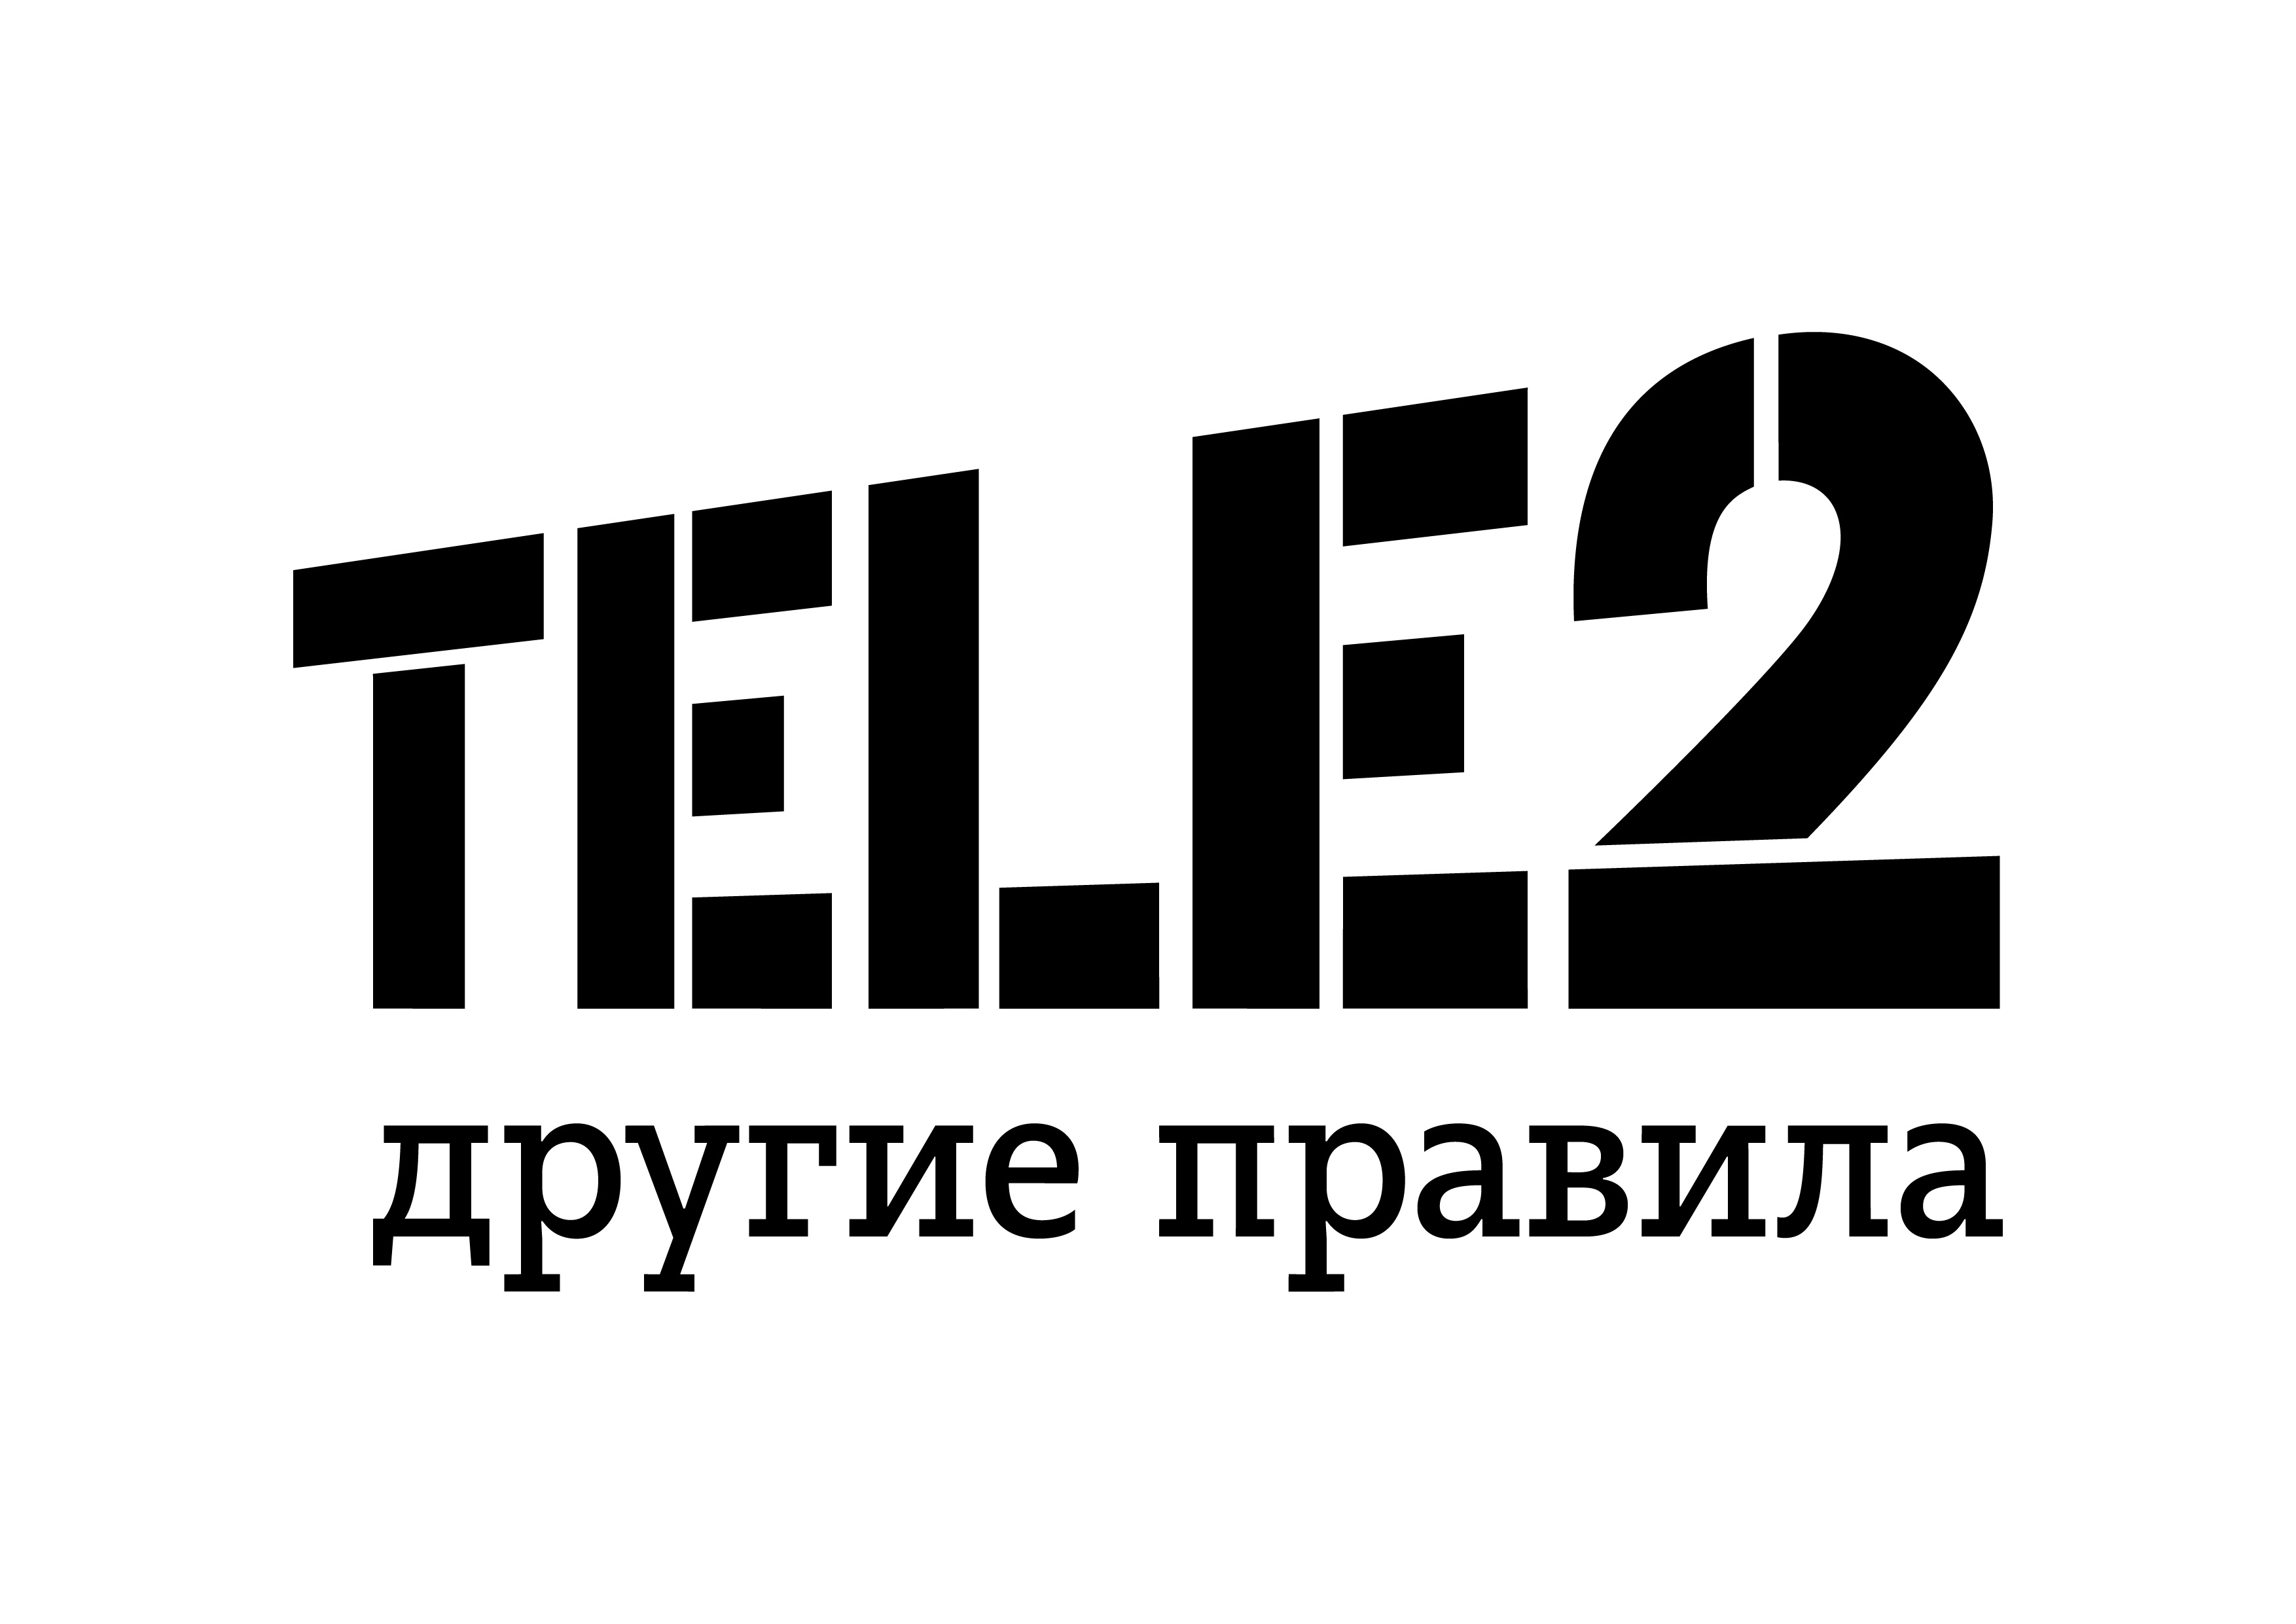 Бизнес-клиенты Tele2 в Пермском крае стали больше пользоваться мобильным интернетом 